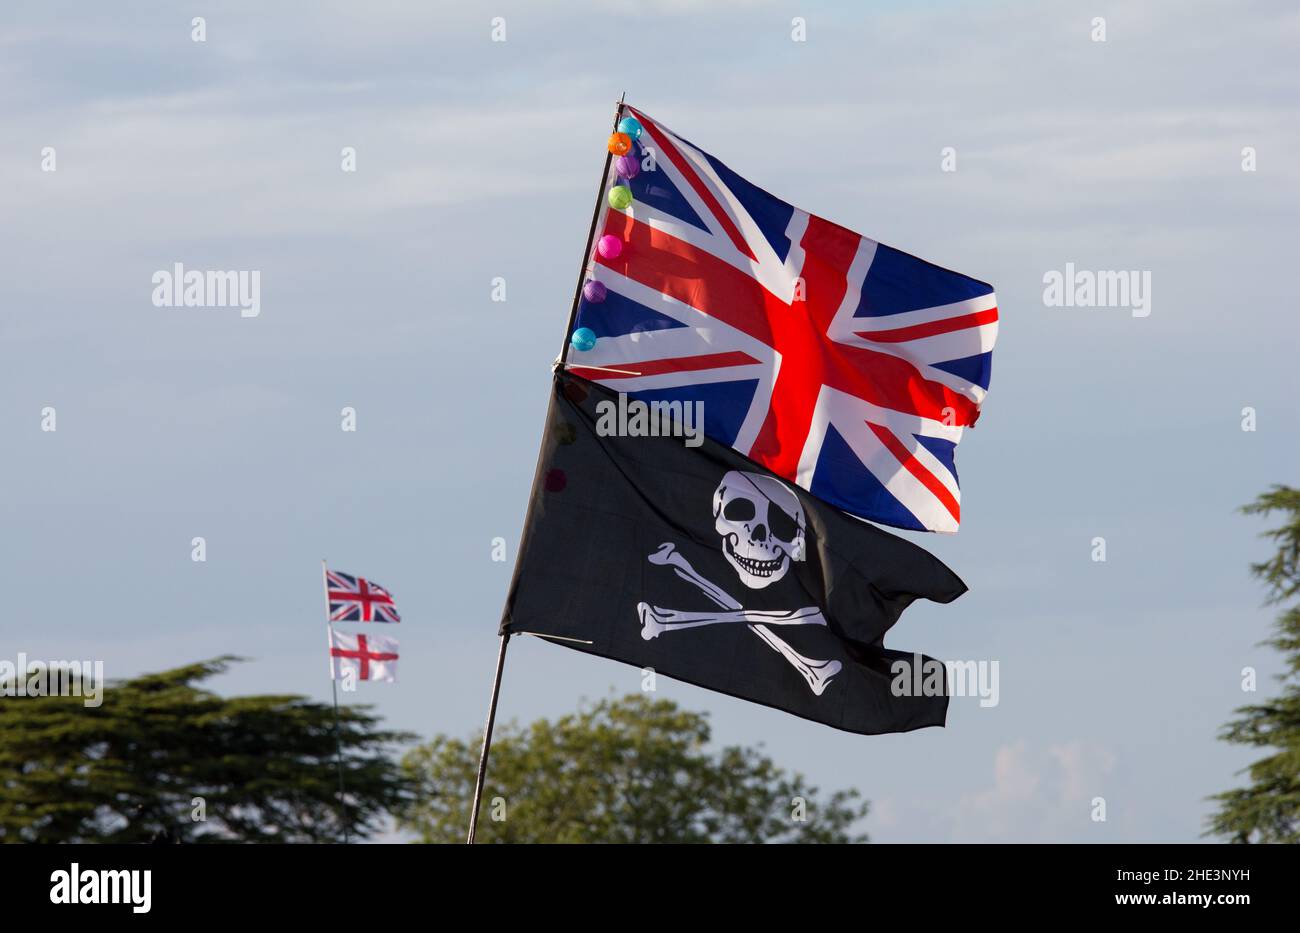 Drapeau de l'Union au-dessus d'un drapeau de pirate Jolly Roger avec drapeau de St George en arrière-plan Banque D'Images